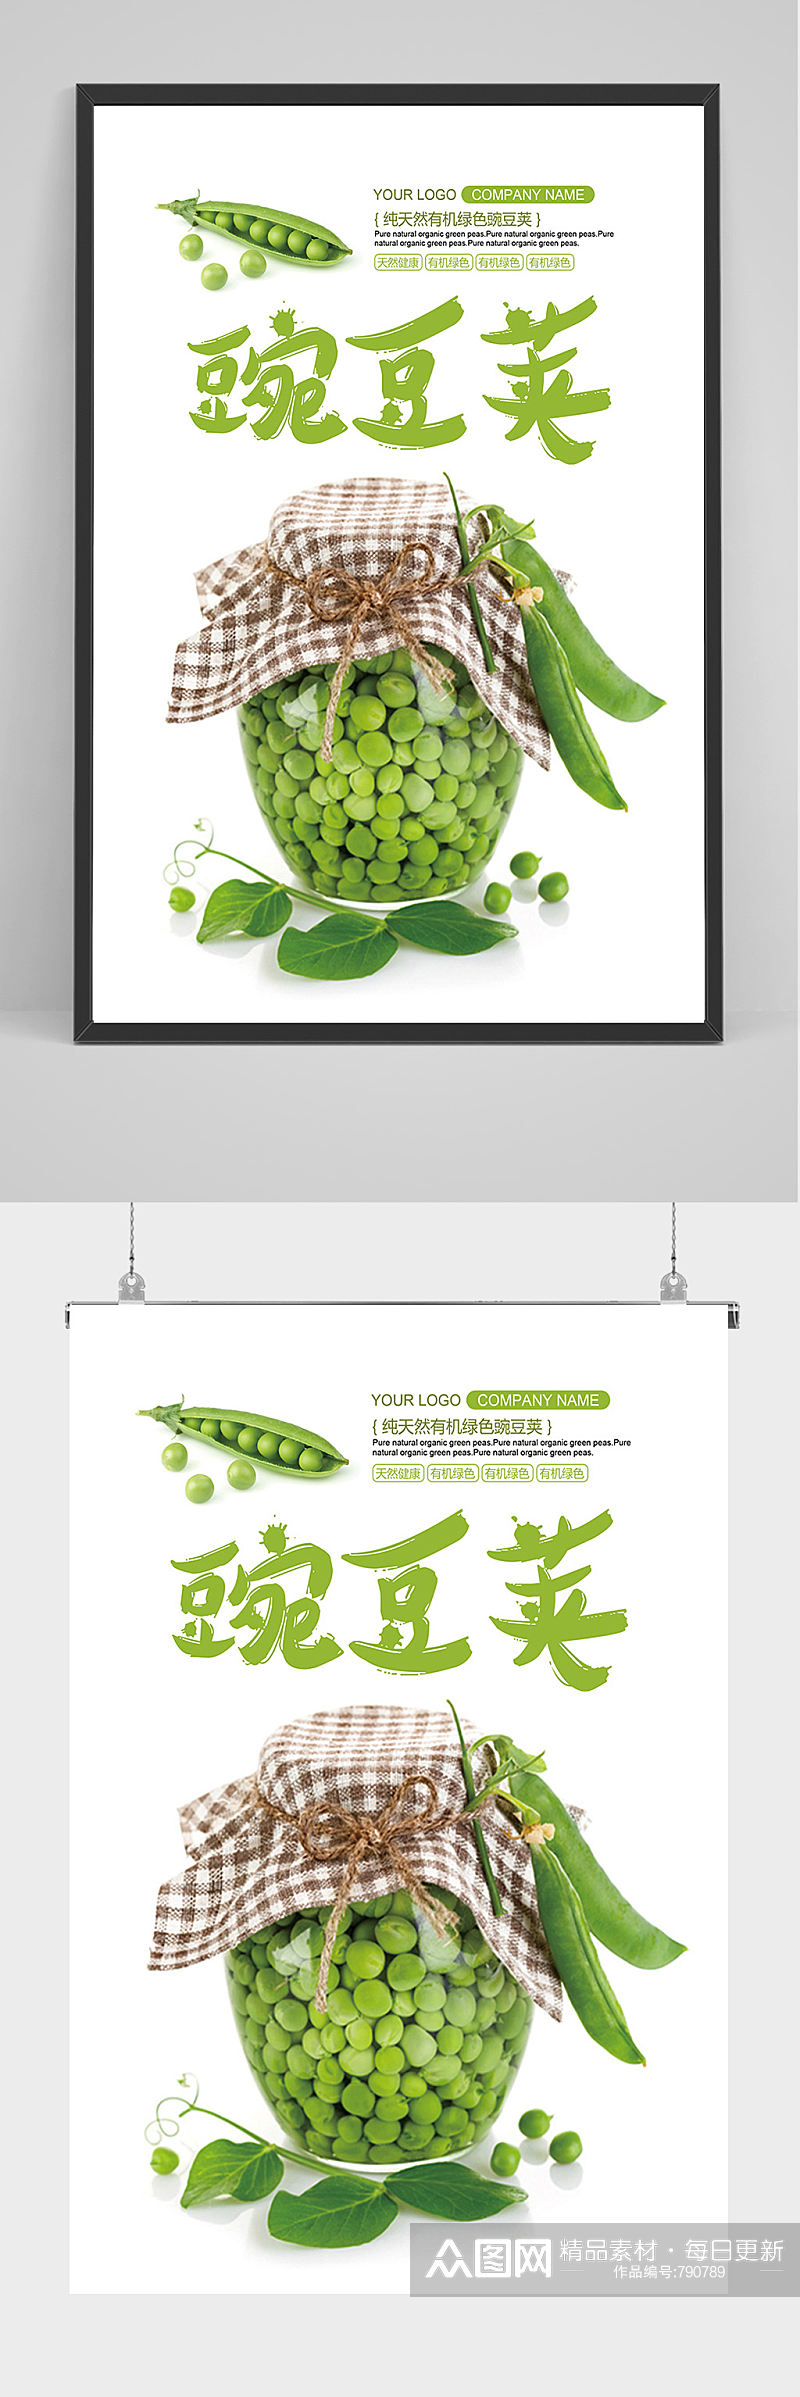 简洁豌豆荚海报设计素材